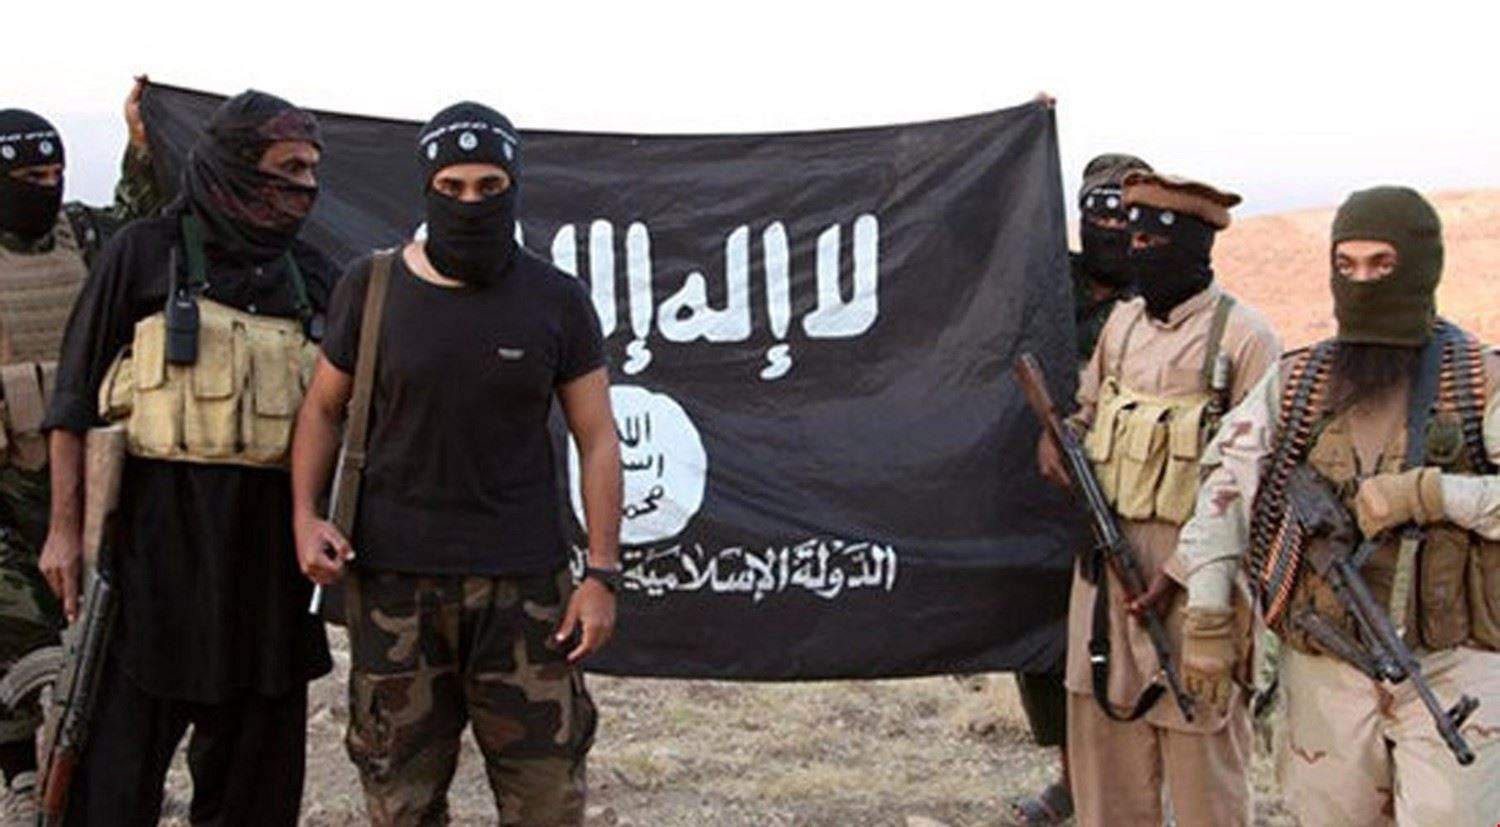 تنظيم "داعش" في سوريا يقلق أوروبا مجددا 